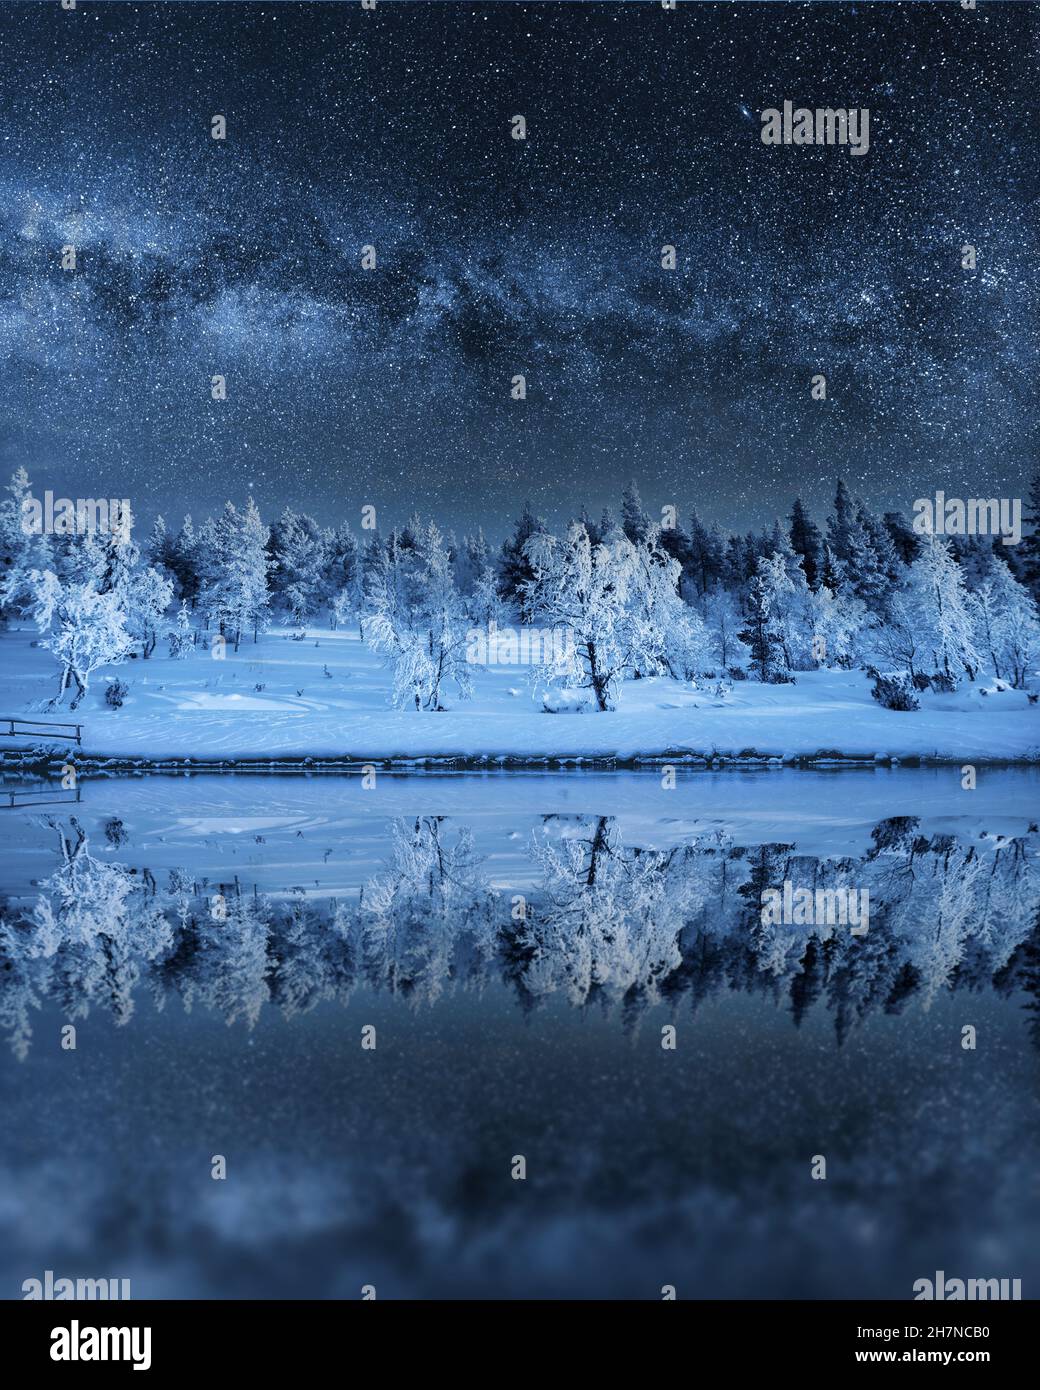 Notte invernale fata. Paesaggio con la via lattiginosa e gli alberi nevosi che si riflettono in una notte di lago in inverno. Foto Stock